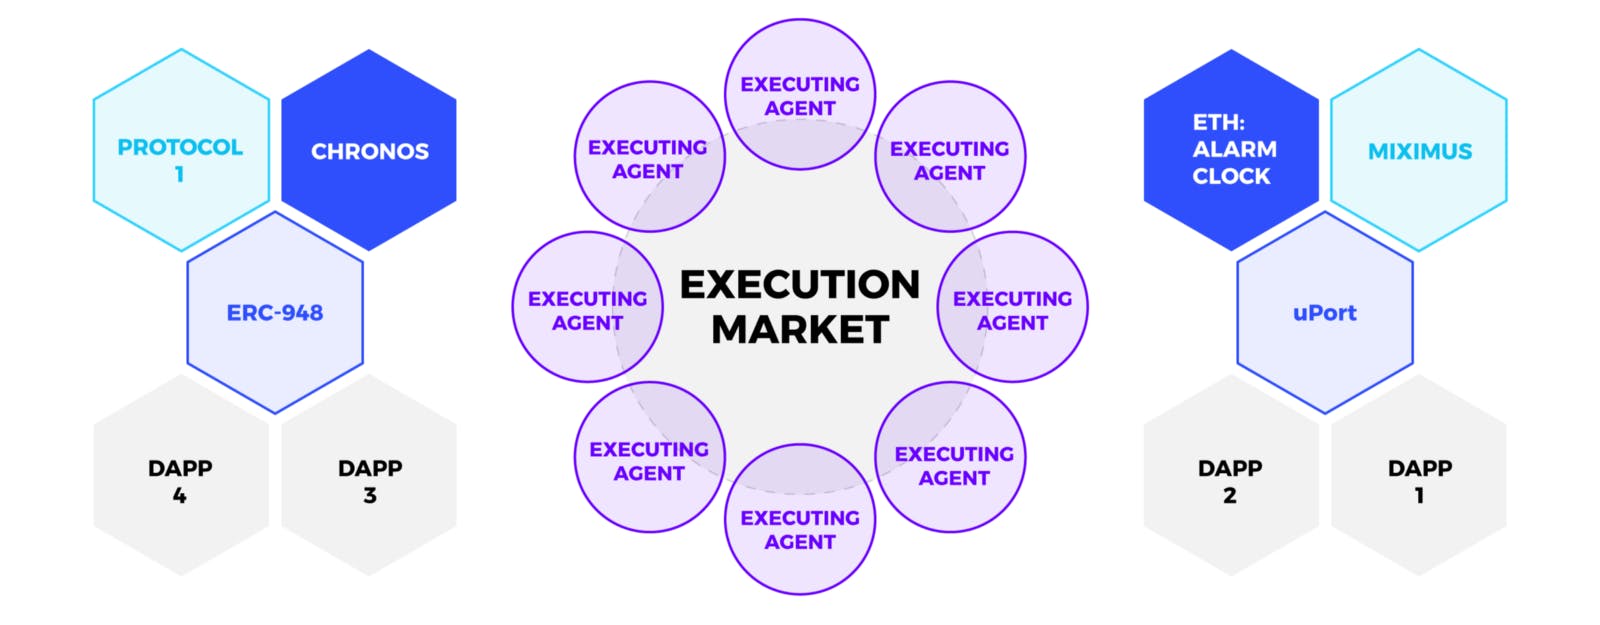 /execution-markets-automate-protocols-and-earn-crypto-67f64911010e feature image